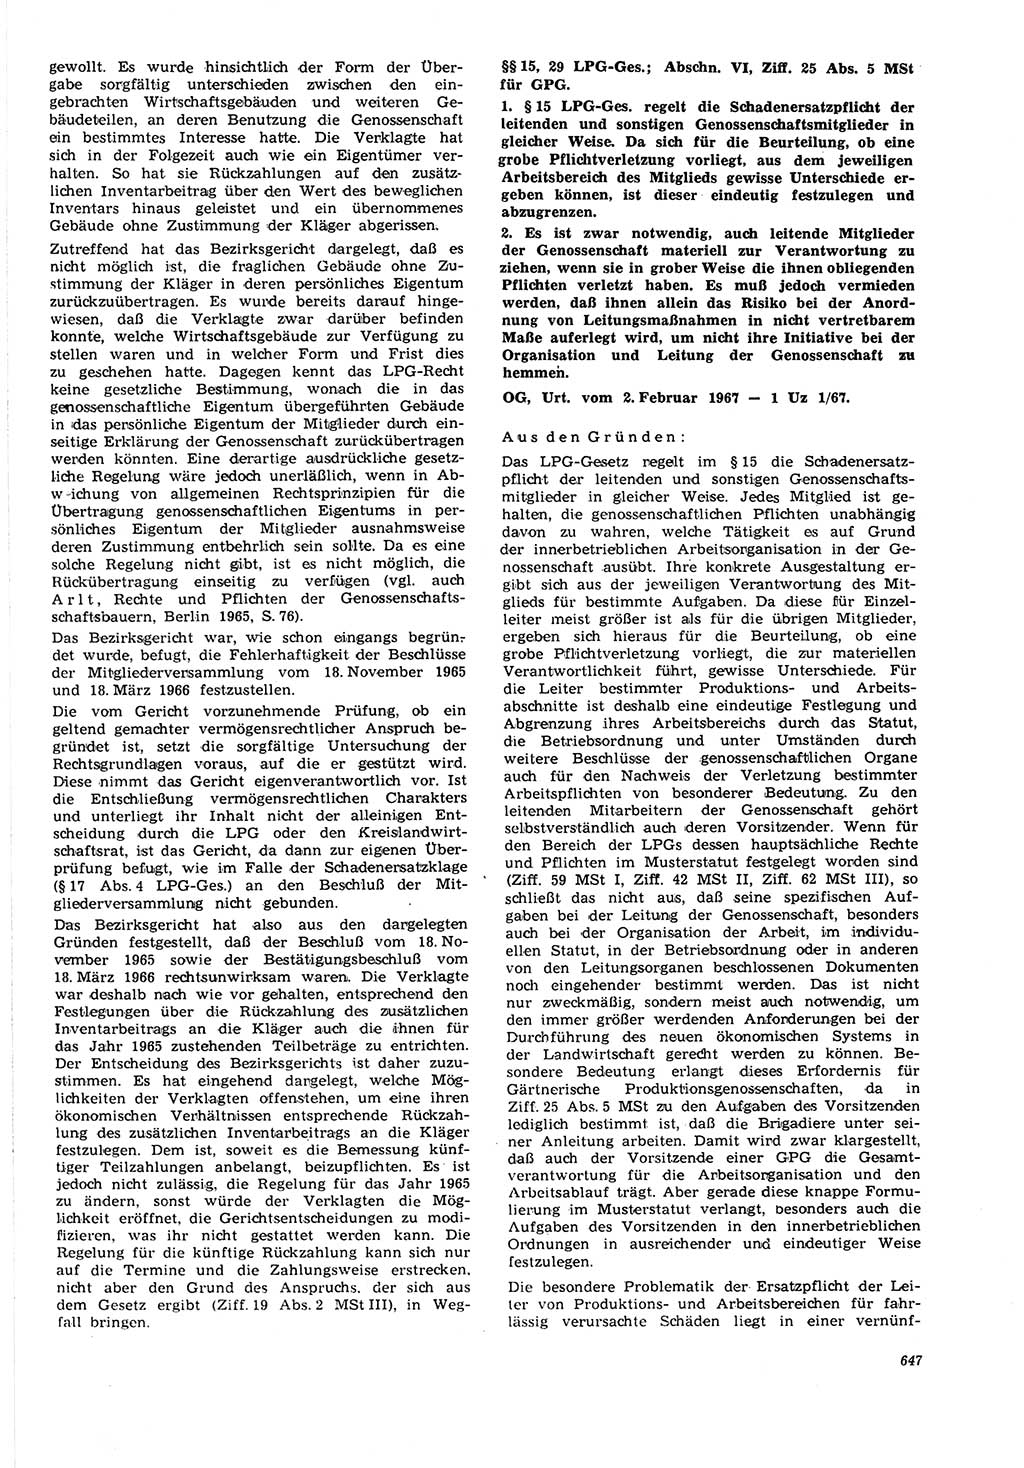 Neue Justiz (NJ), Zeitschrift für Recht und Rechtswissenschaft [Deutsche Demokratische Republik (DDR)], 21. Jahrgang 1967, Seite 647 (NJ DDR 1967, S. 647)